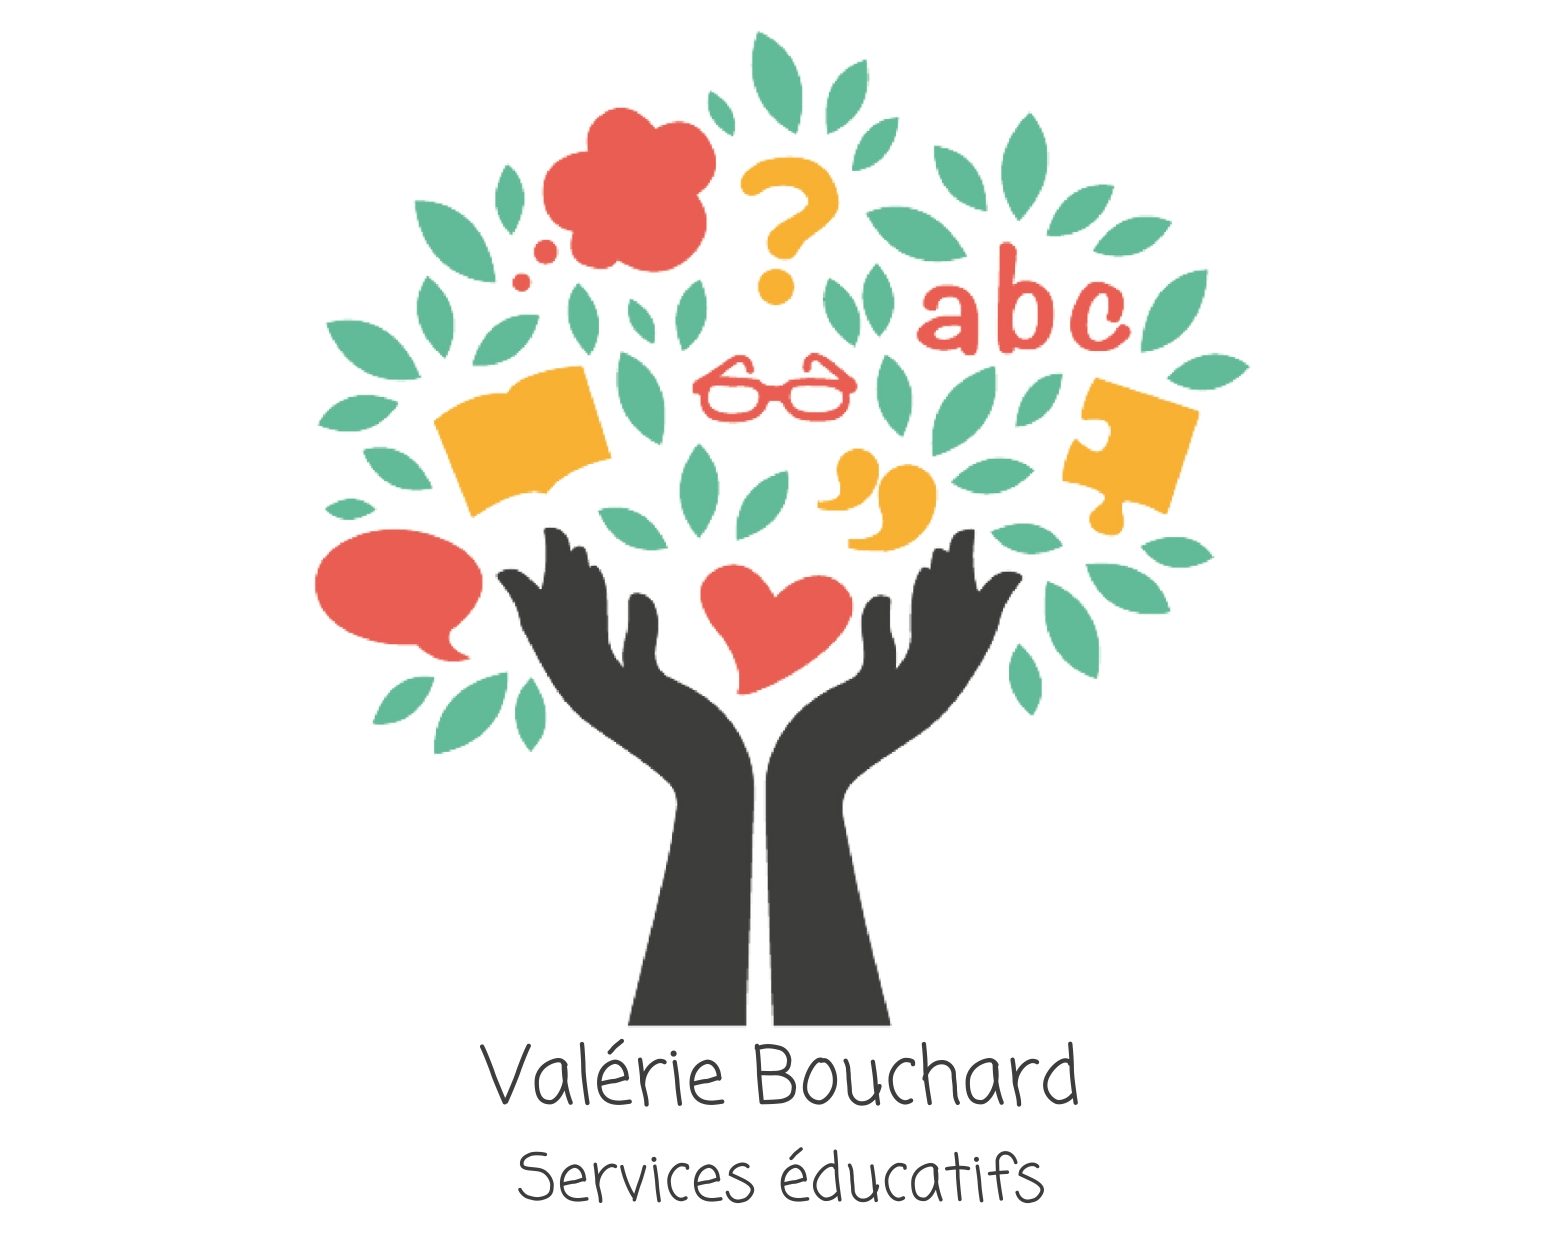 Valérie Bouchard – Services éducatifs